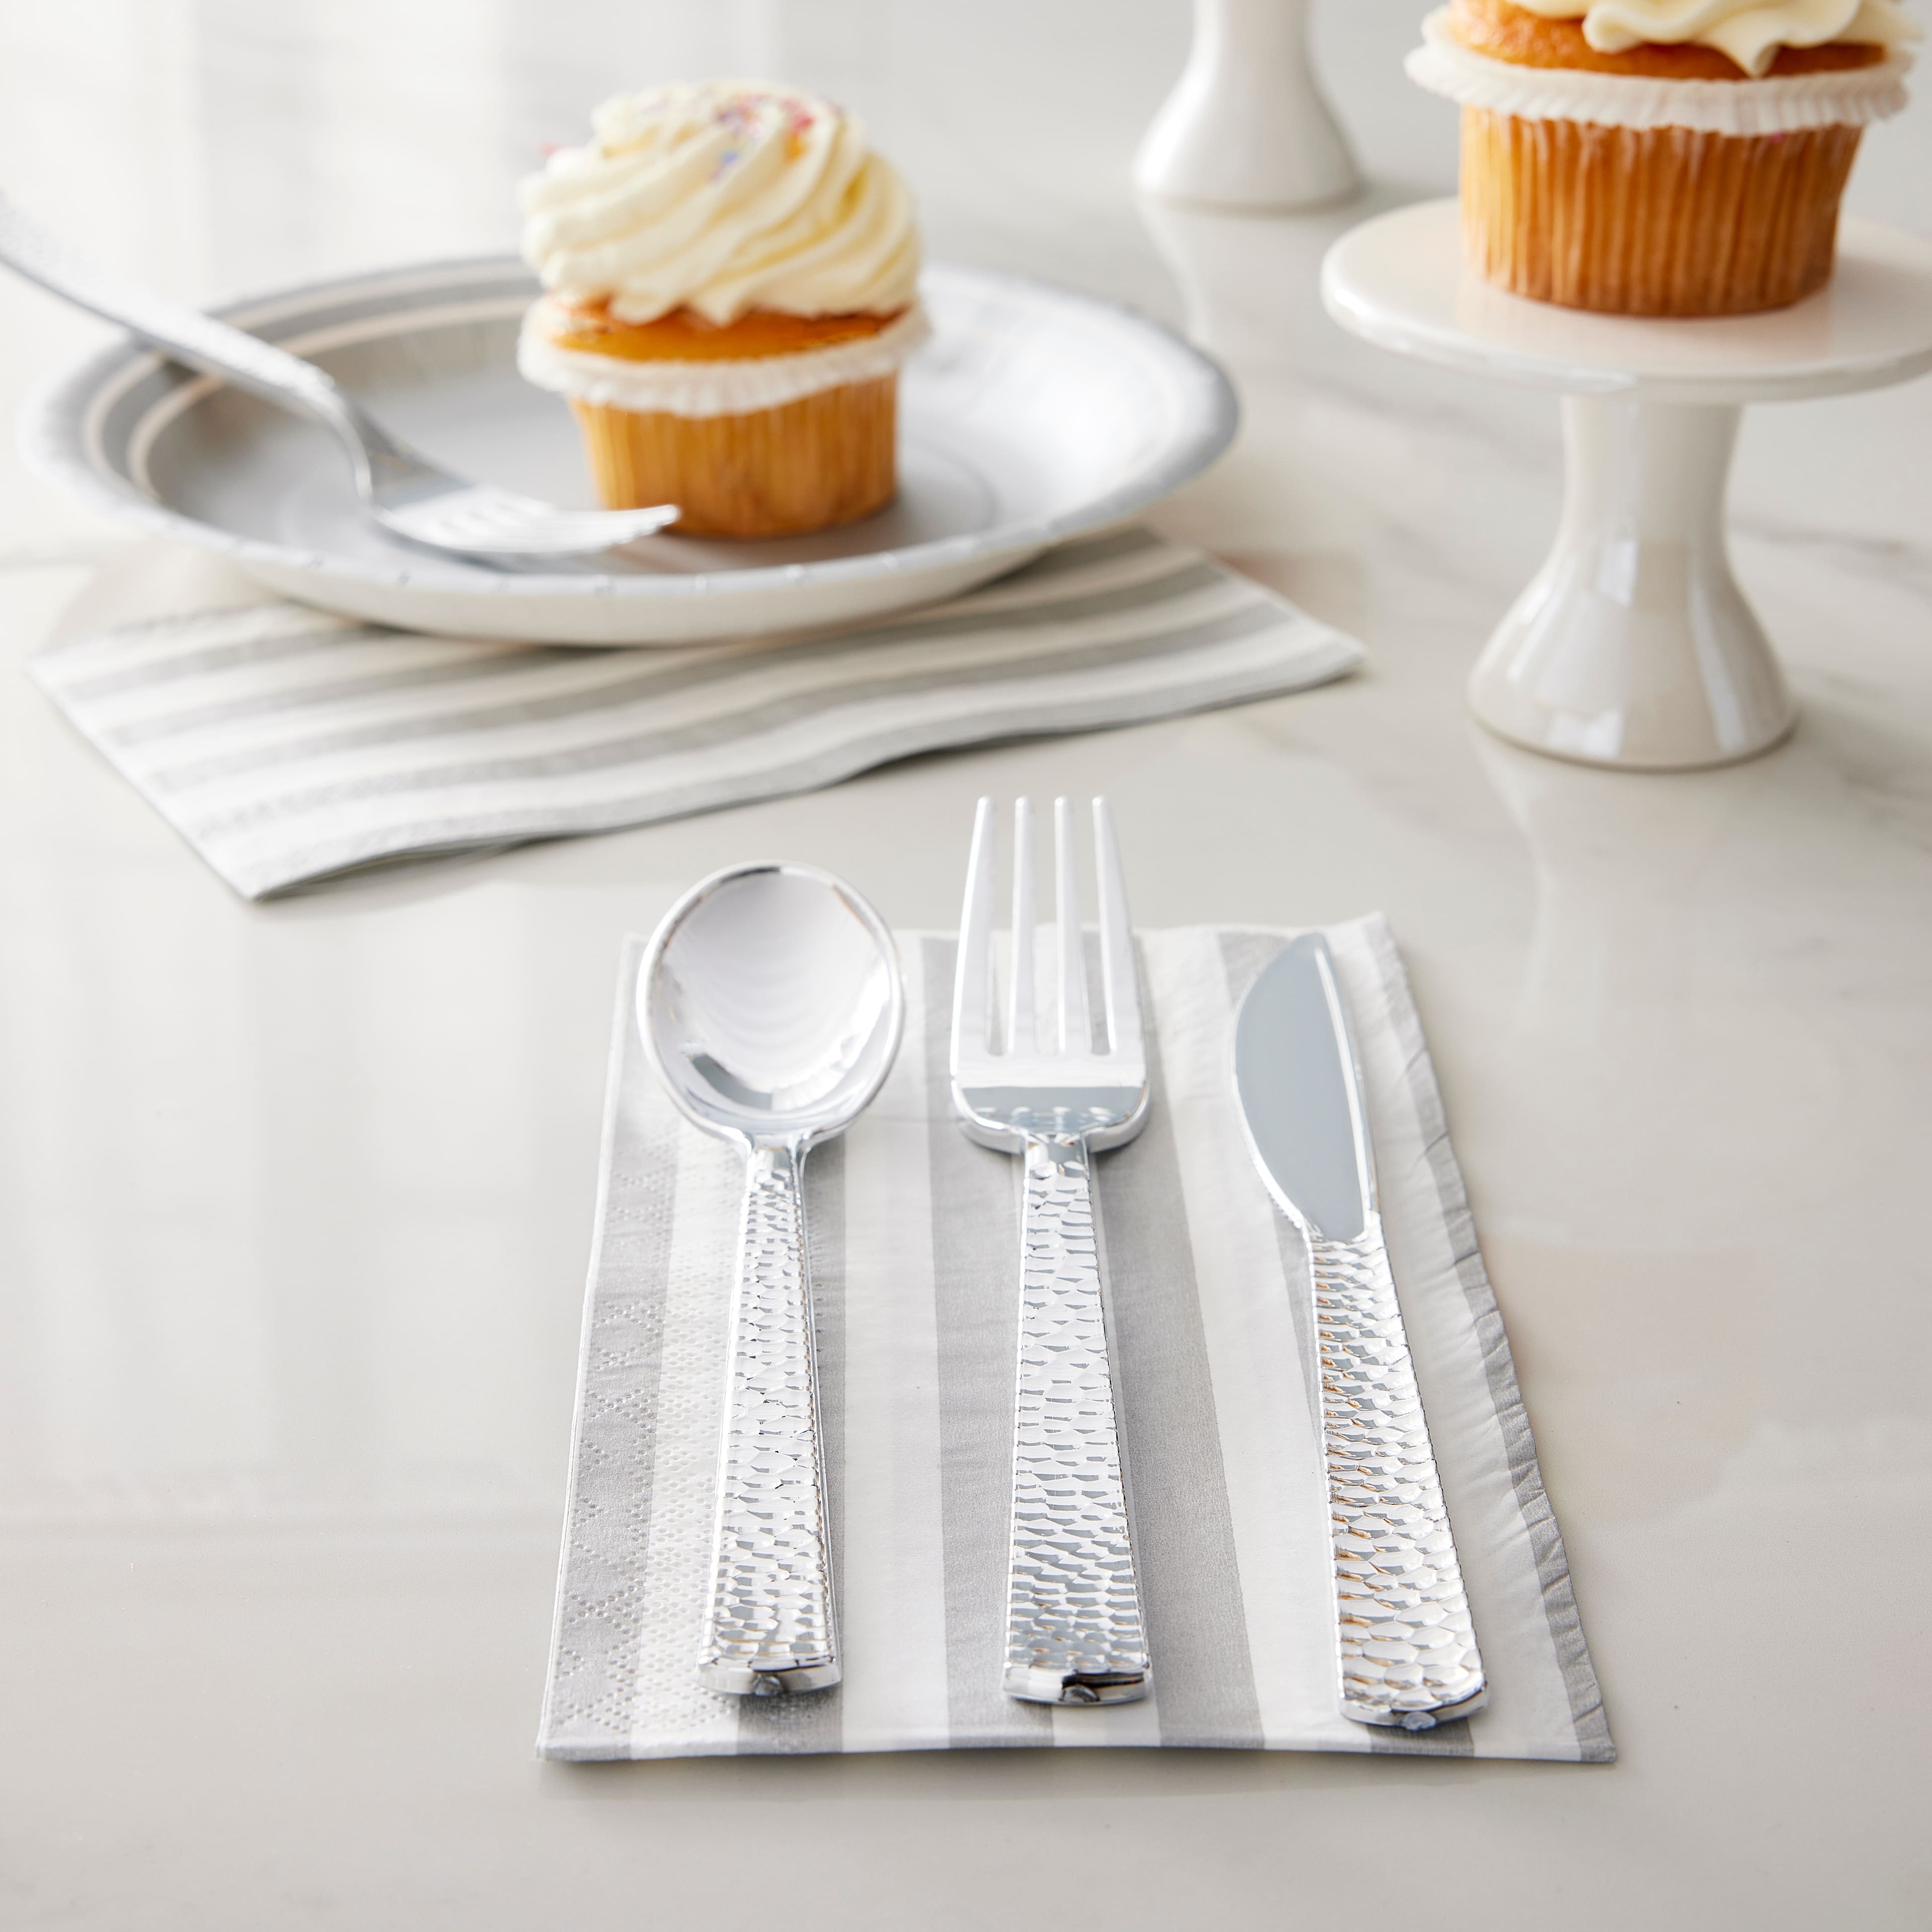 SHENMO 300 Plastic Silverware Set, Silver Plastic Cutlery Set,, 100 Plastic  Forks, 100 Plastic Spoons, 100 Plastic Knives